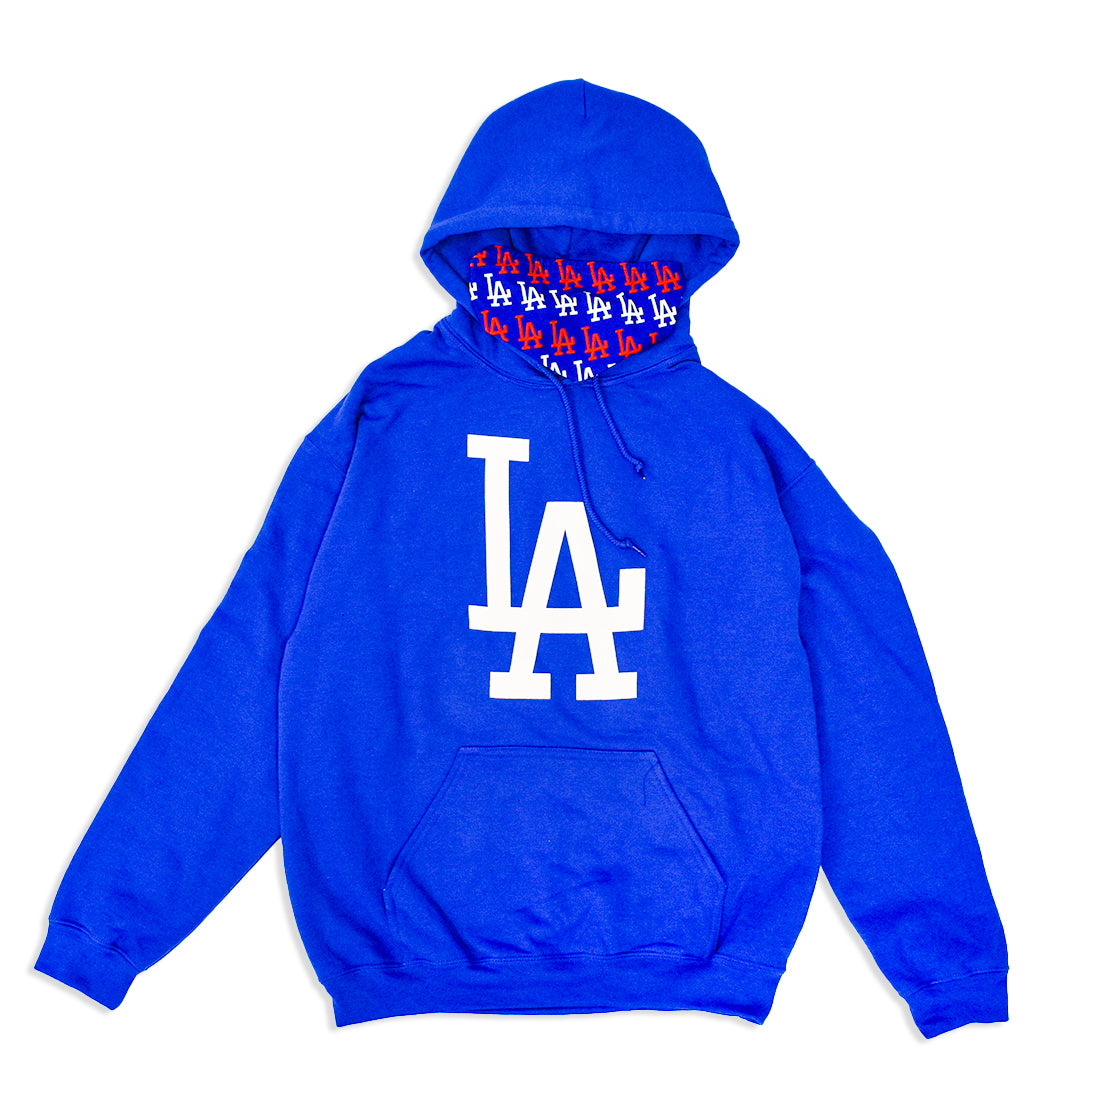 Los Angeles Dodgers Hoodie sweatshirt S, M, L, XL, 2X, 3X NEW!